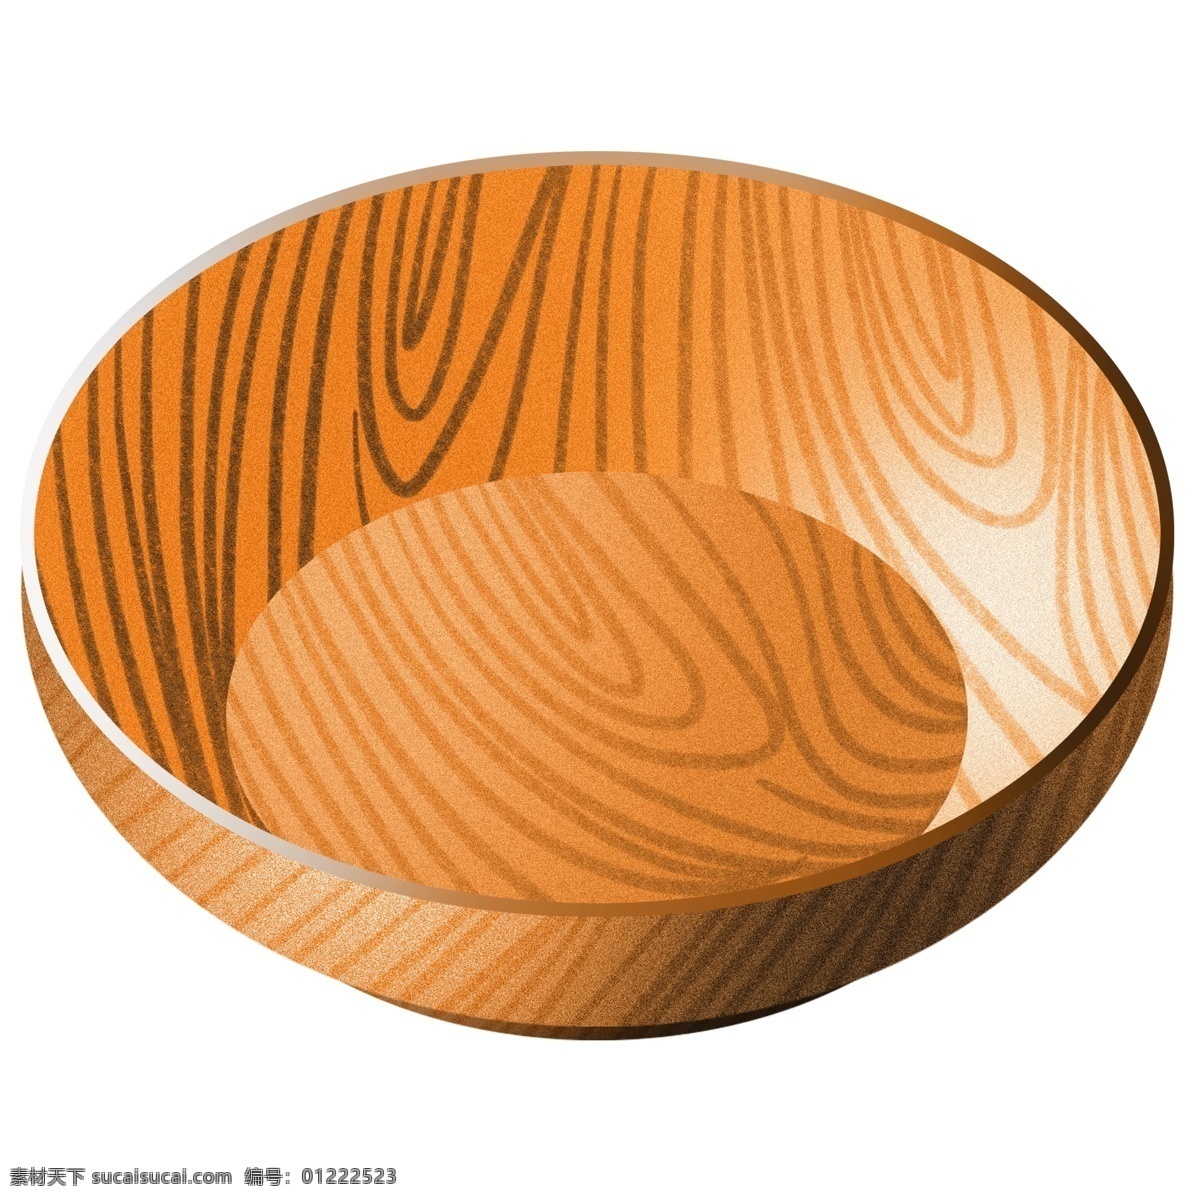 木质 饭碗 卡通 插画 木质的饭碗 卡通插画 木质插画 木板插画 漂亮的饭碗 木头 木块 木材